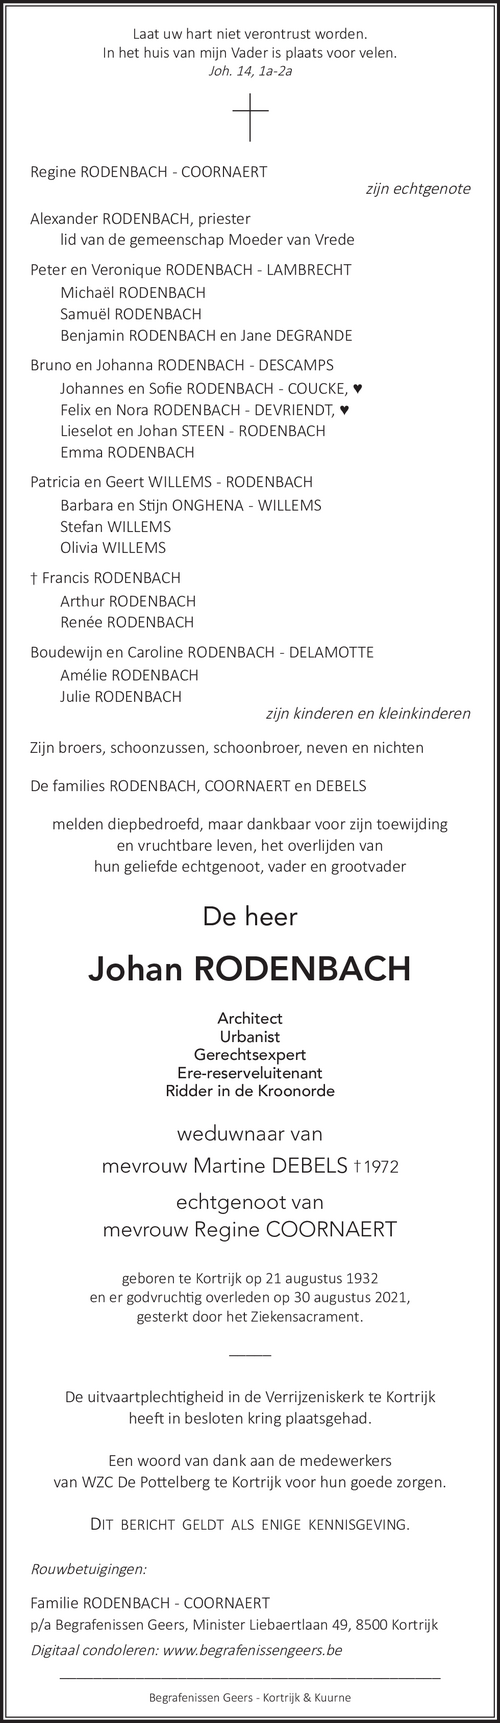 Johan Rodenbach